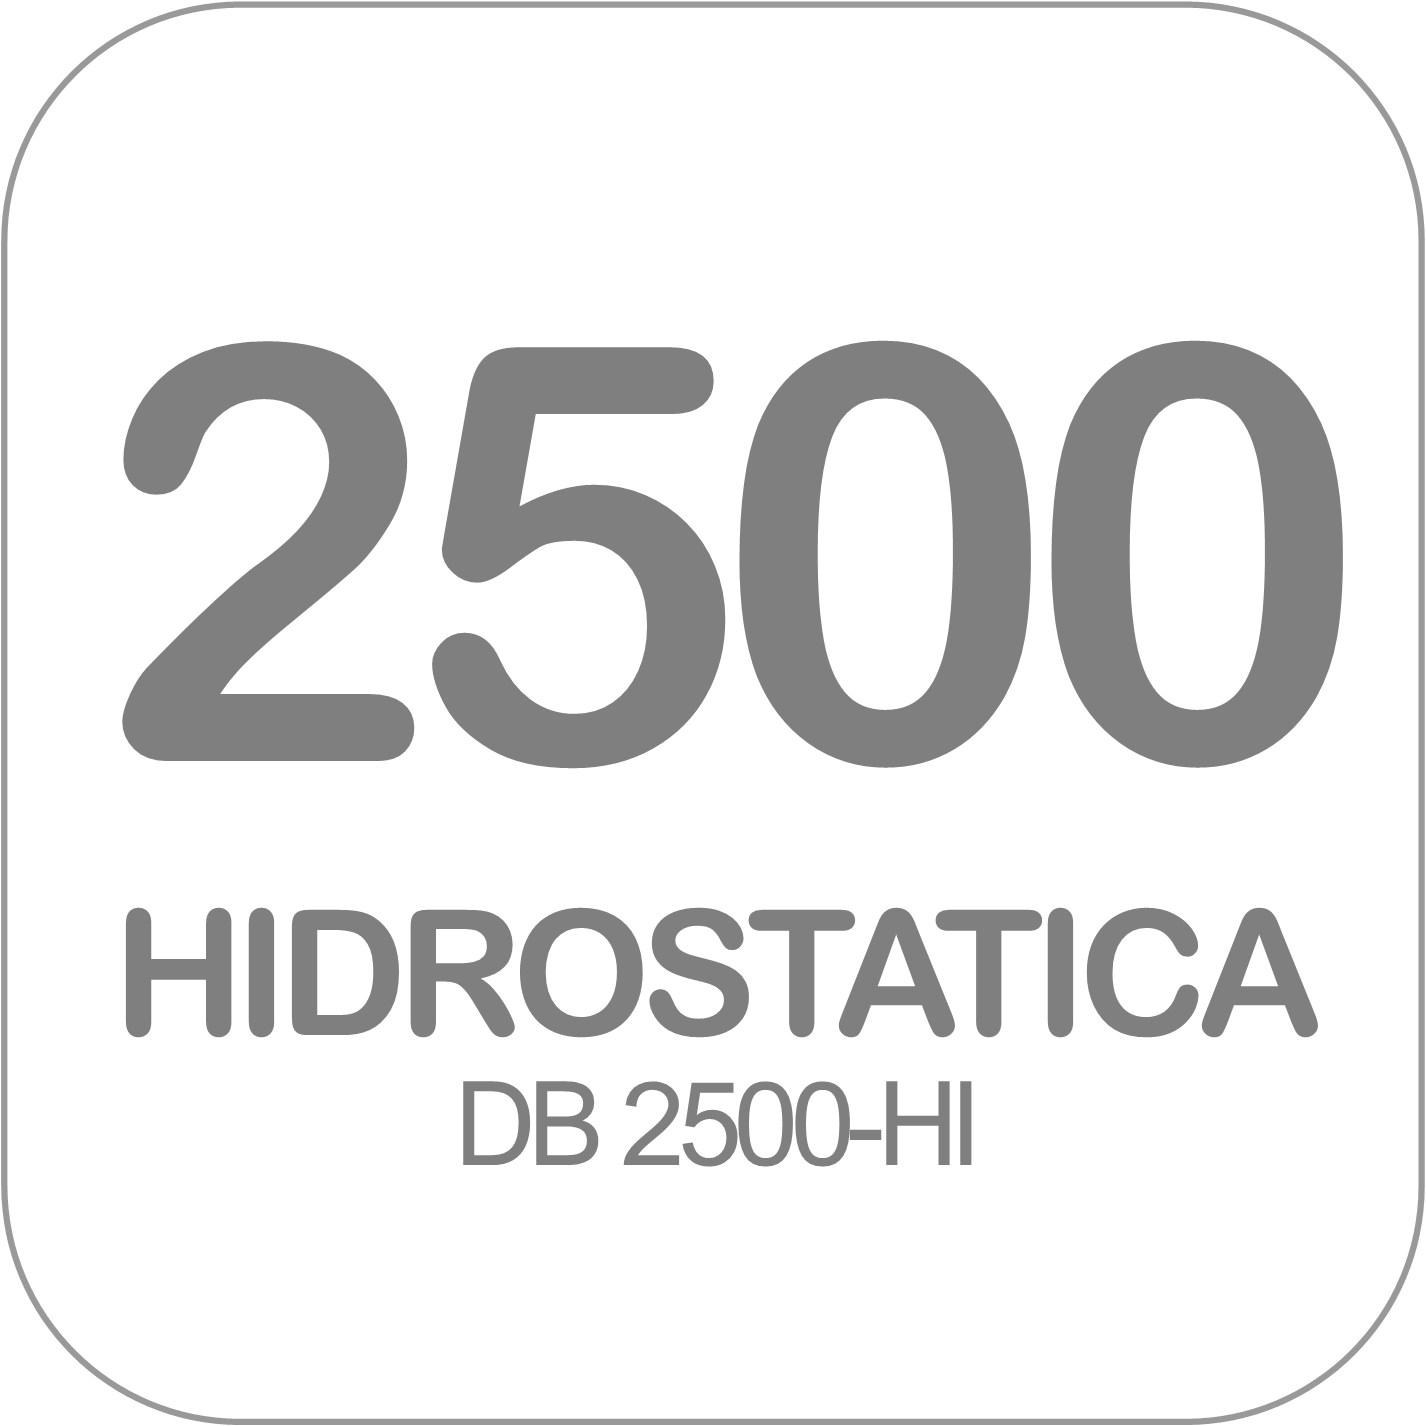 Autohormigonera DB 2500-HI